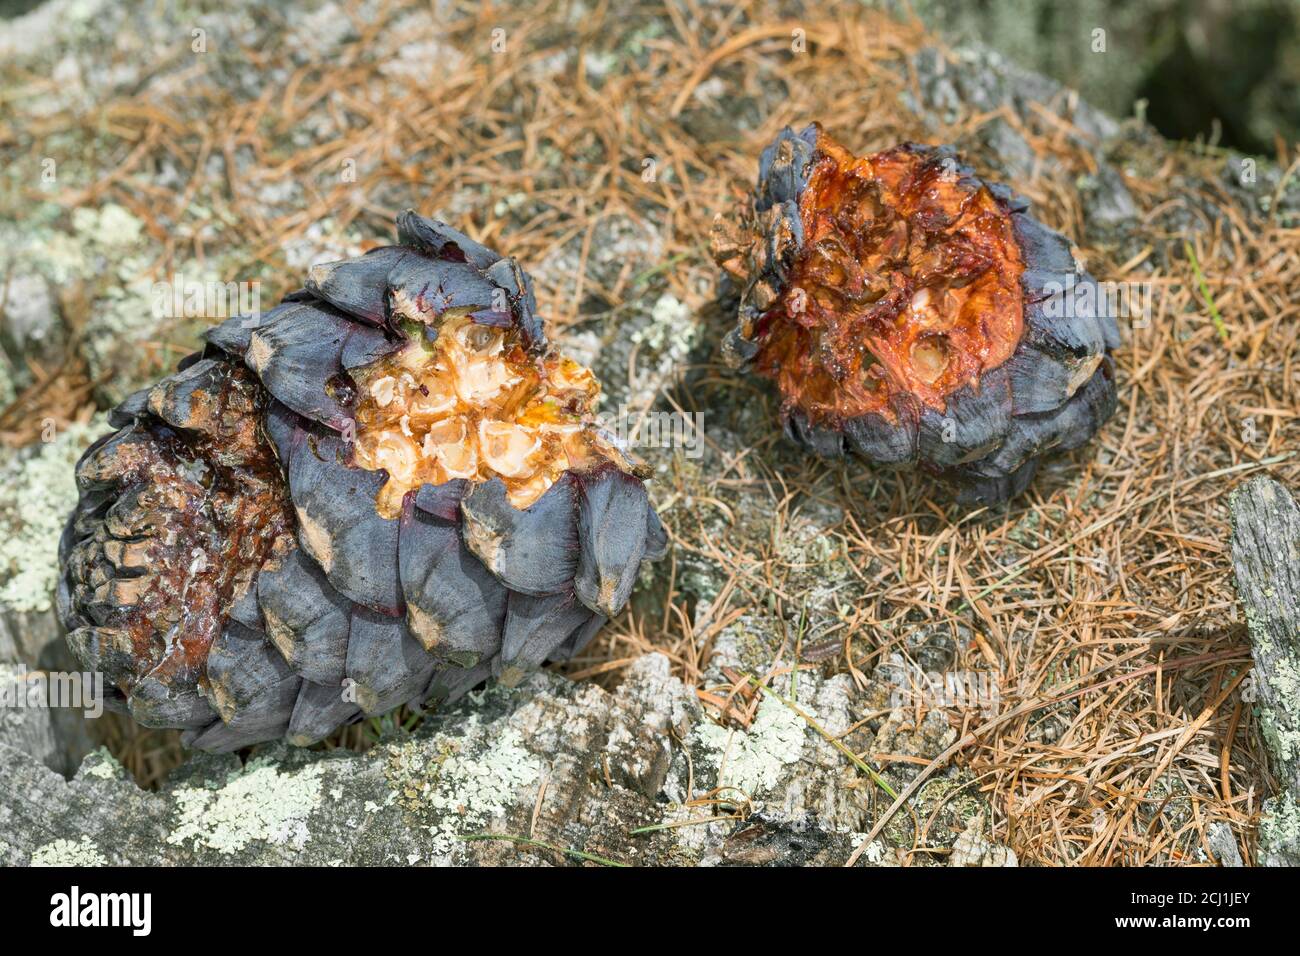 Gefleckter Nussknacker (Nucifraga caryocatactes), Zirbenkegel von einem gefleckten Nussknacker gebrochen, Deutschland Stockfoto